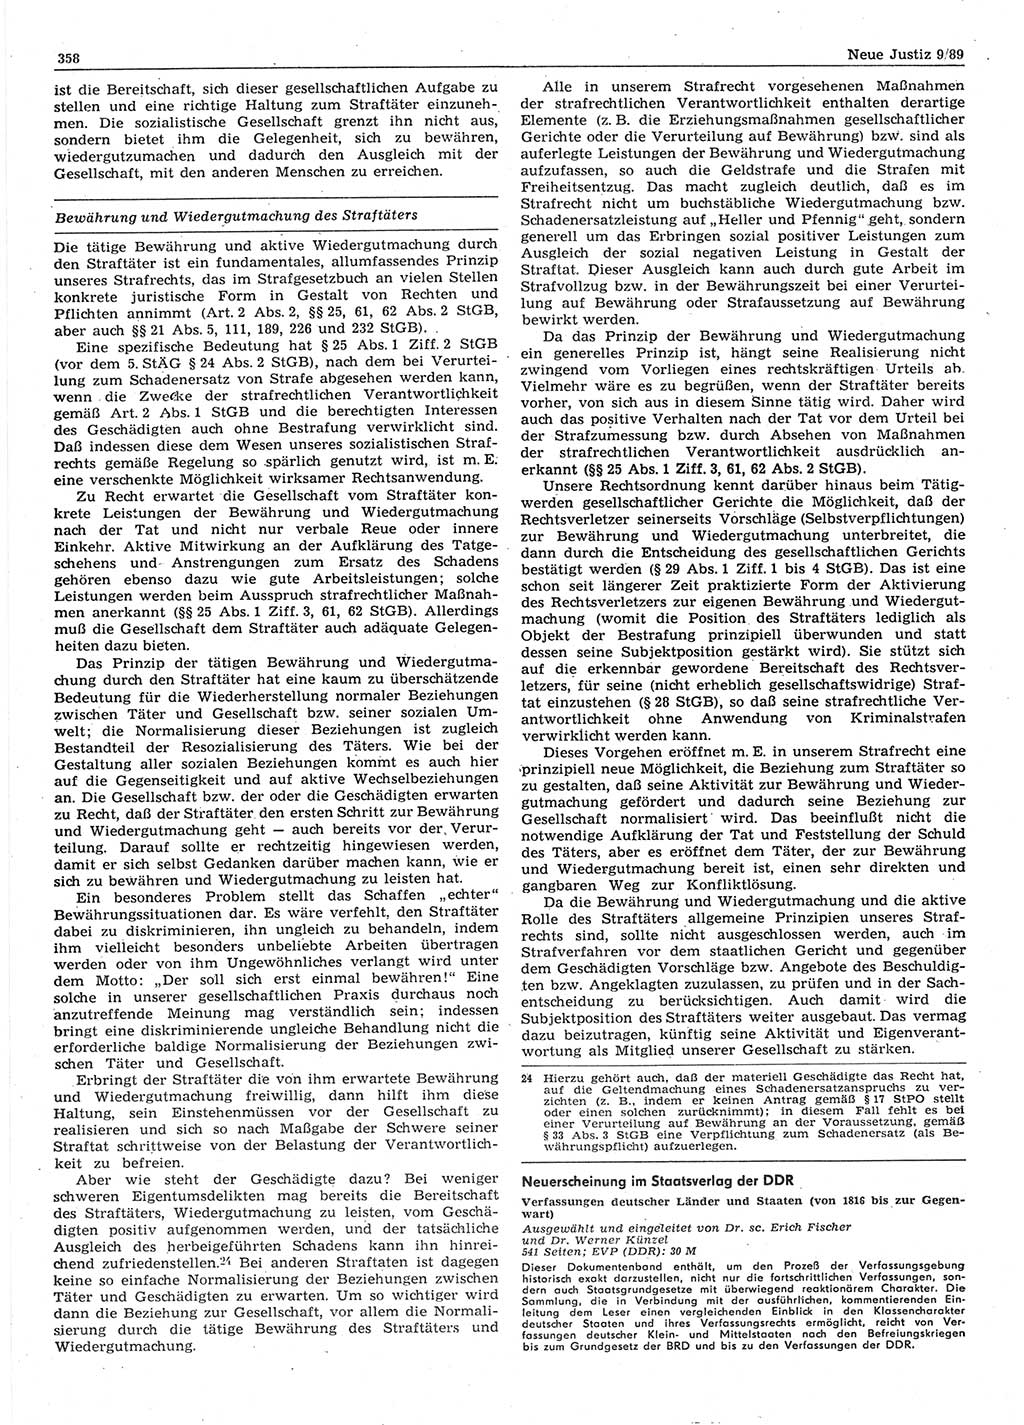 Neue Justiz (NJ), Zeitschrift für sozialistisches Recht und Gesetzlichkeit [Deutsche Demokratische Republik (DDR)], 43. Jahrgang 1989, Seite 358 (NJ DDR 1989, S. 358)